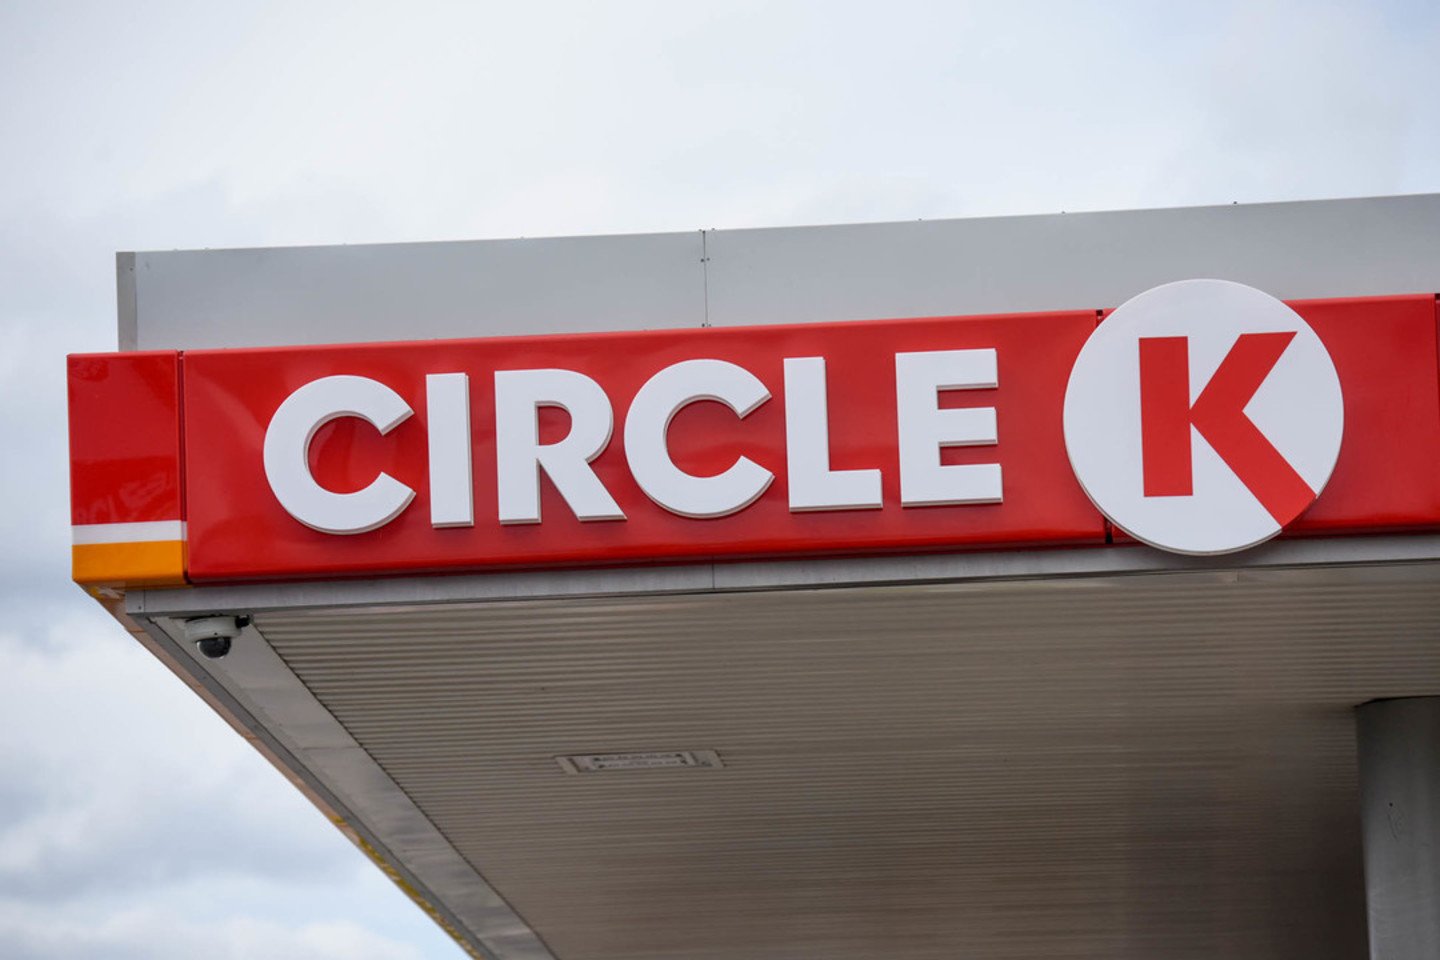  Nuo šiol visos "Statoil" degalinės vadinsis "Circle K" <br> D.Umbraso nuotr.